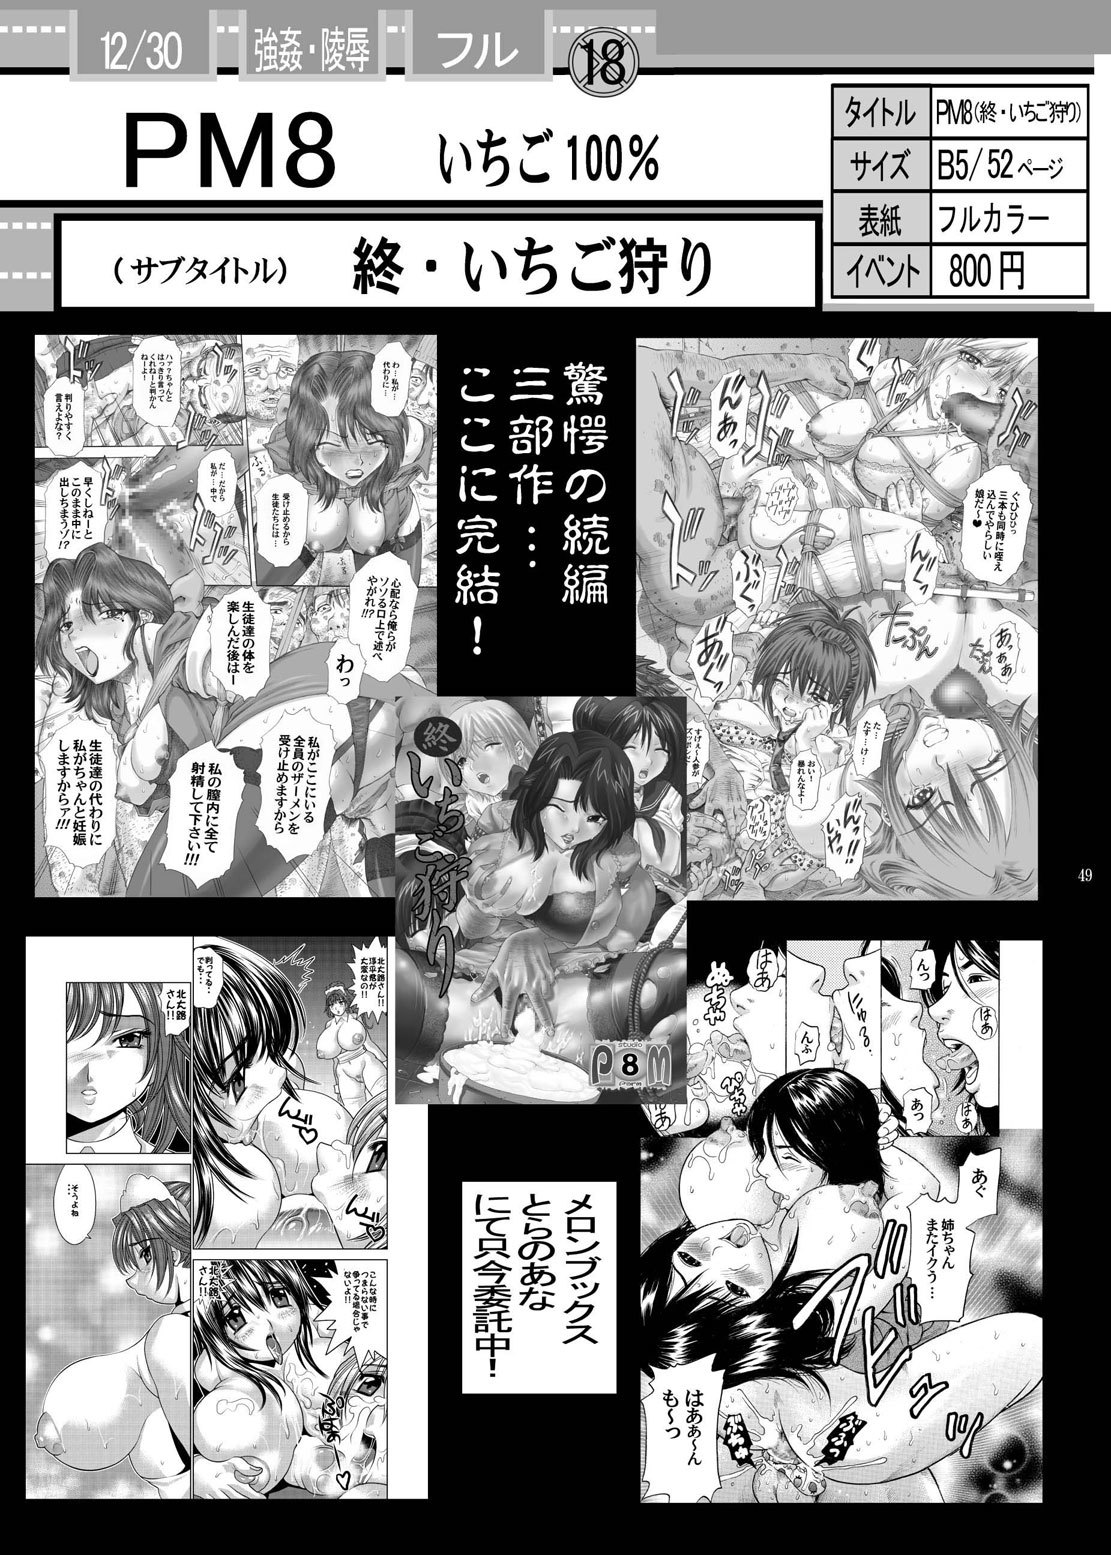 PM 9 - Indecent Ninja Exam naruto 44 hentai manga